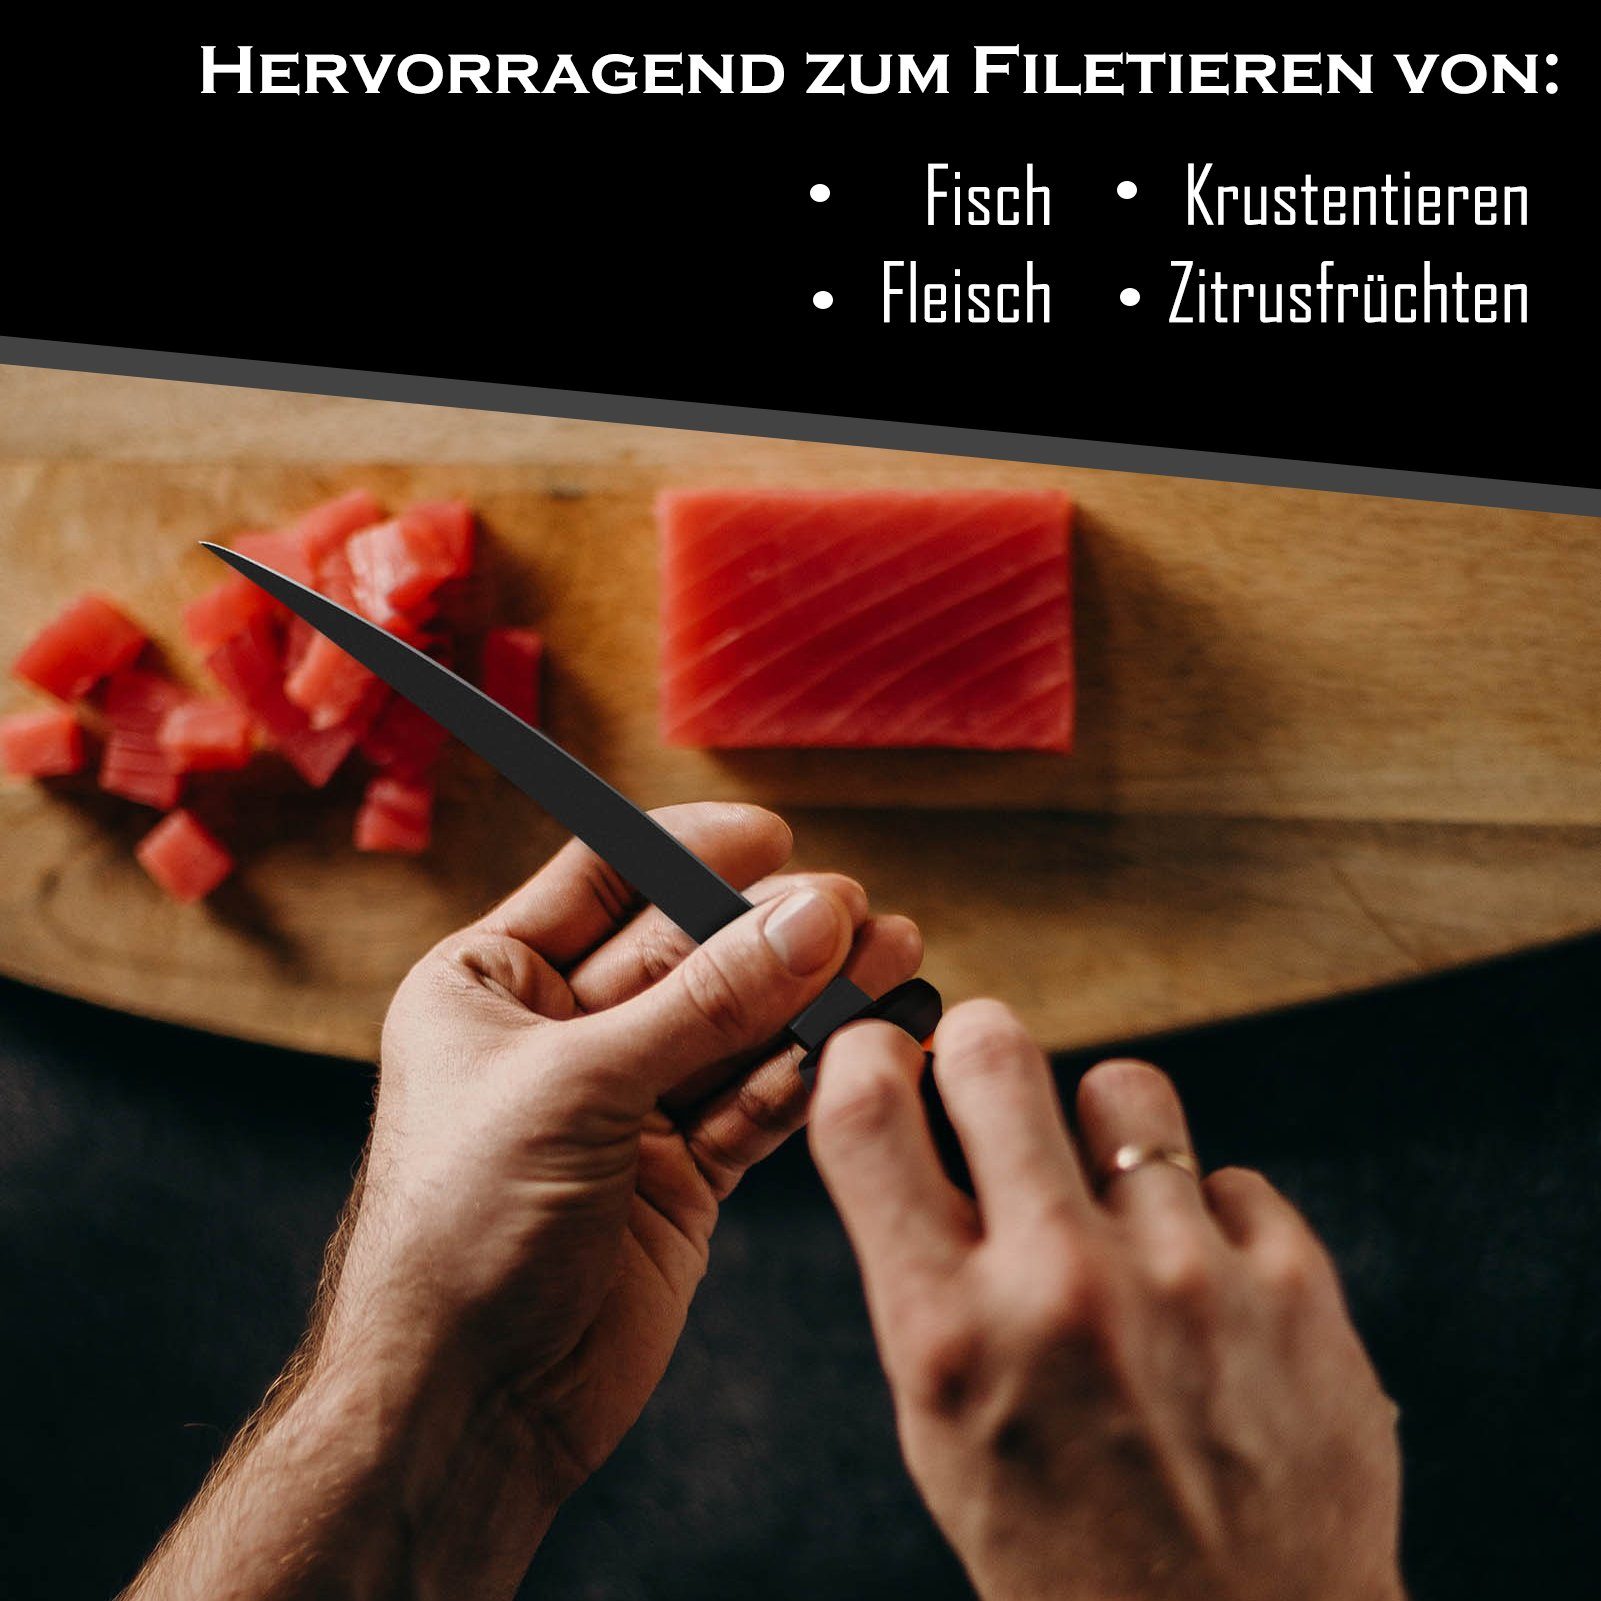 Croch Filetiermesser Fischfiliermesser, Küchenmesser aus Orange hochwertigem Edelstahl